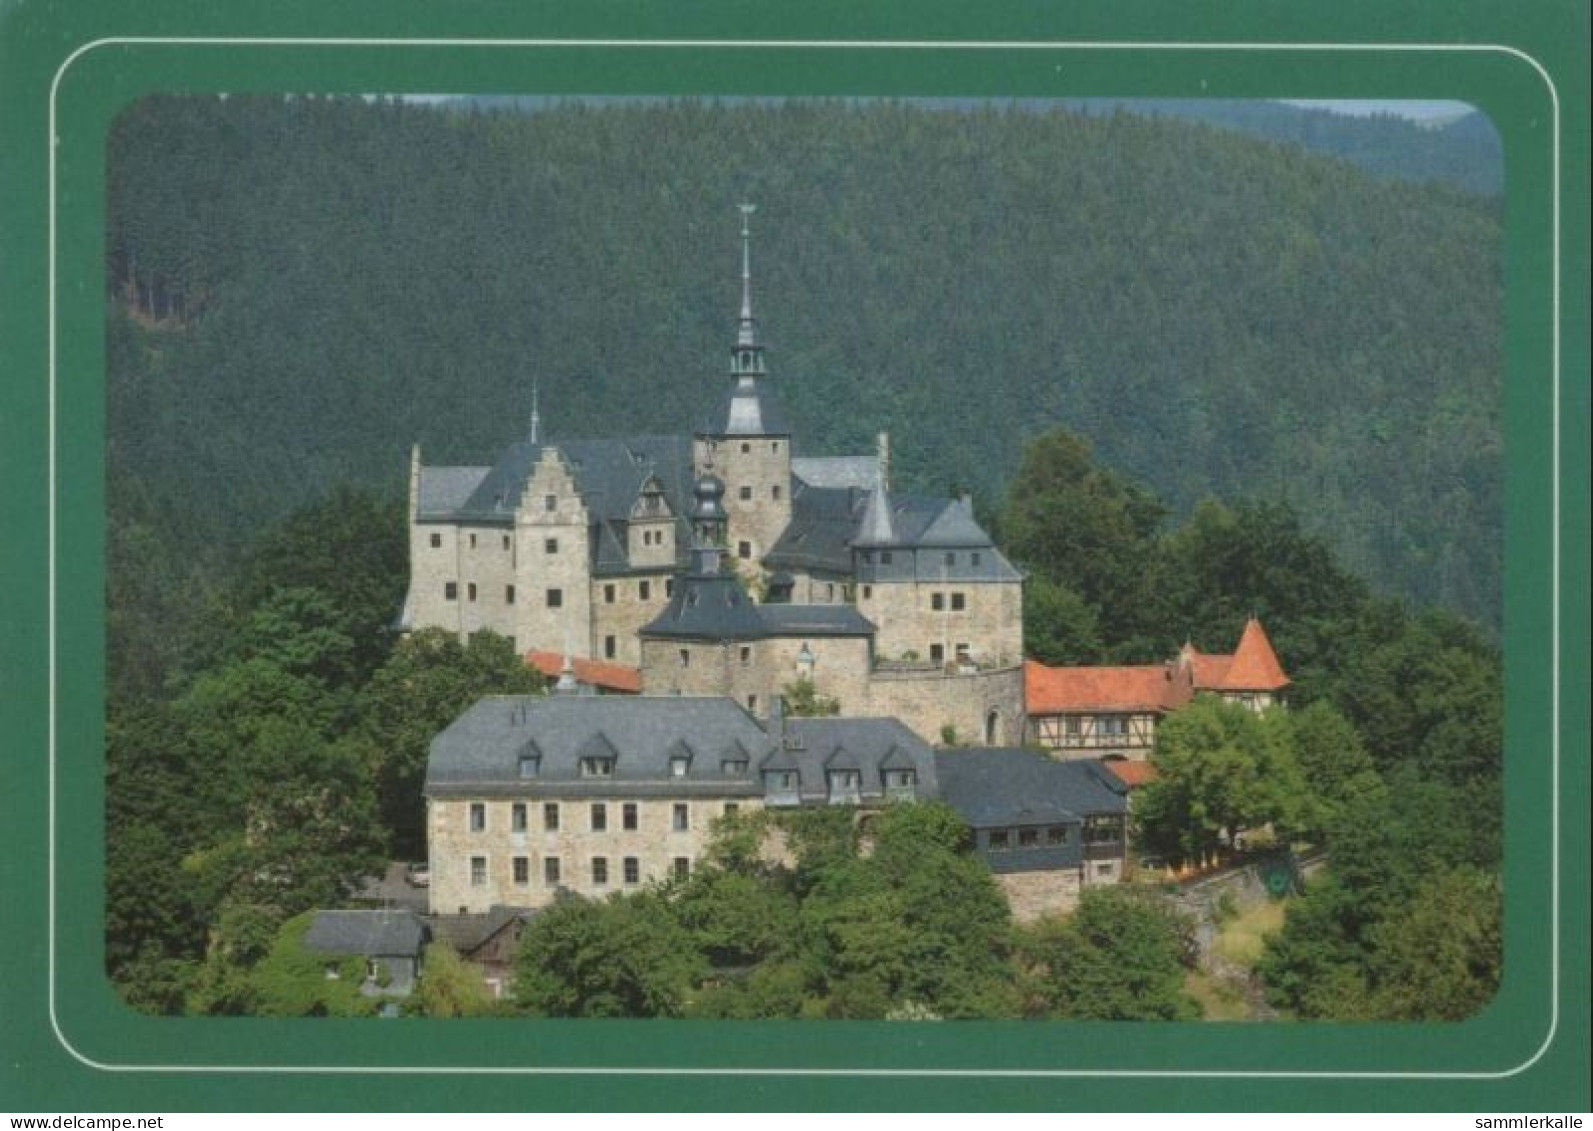 107447 - Ludwigsstadt-Lauenstein, Burg Lauenstein - Frankenwald - Kronach